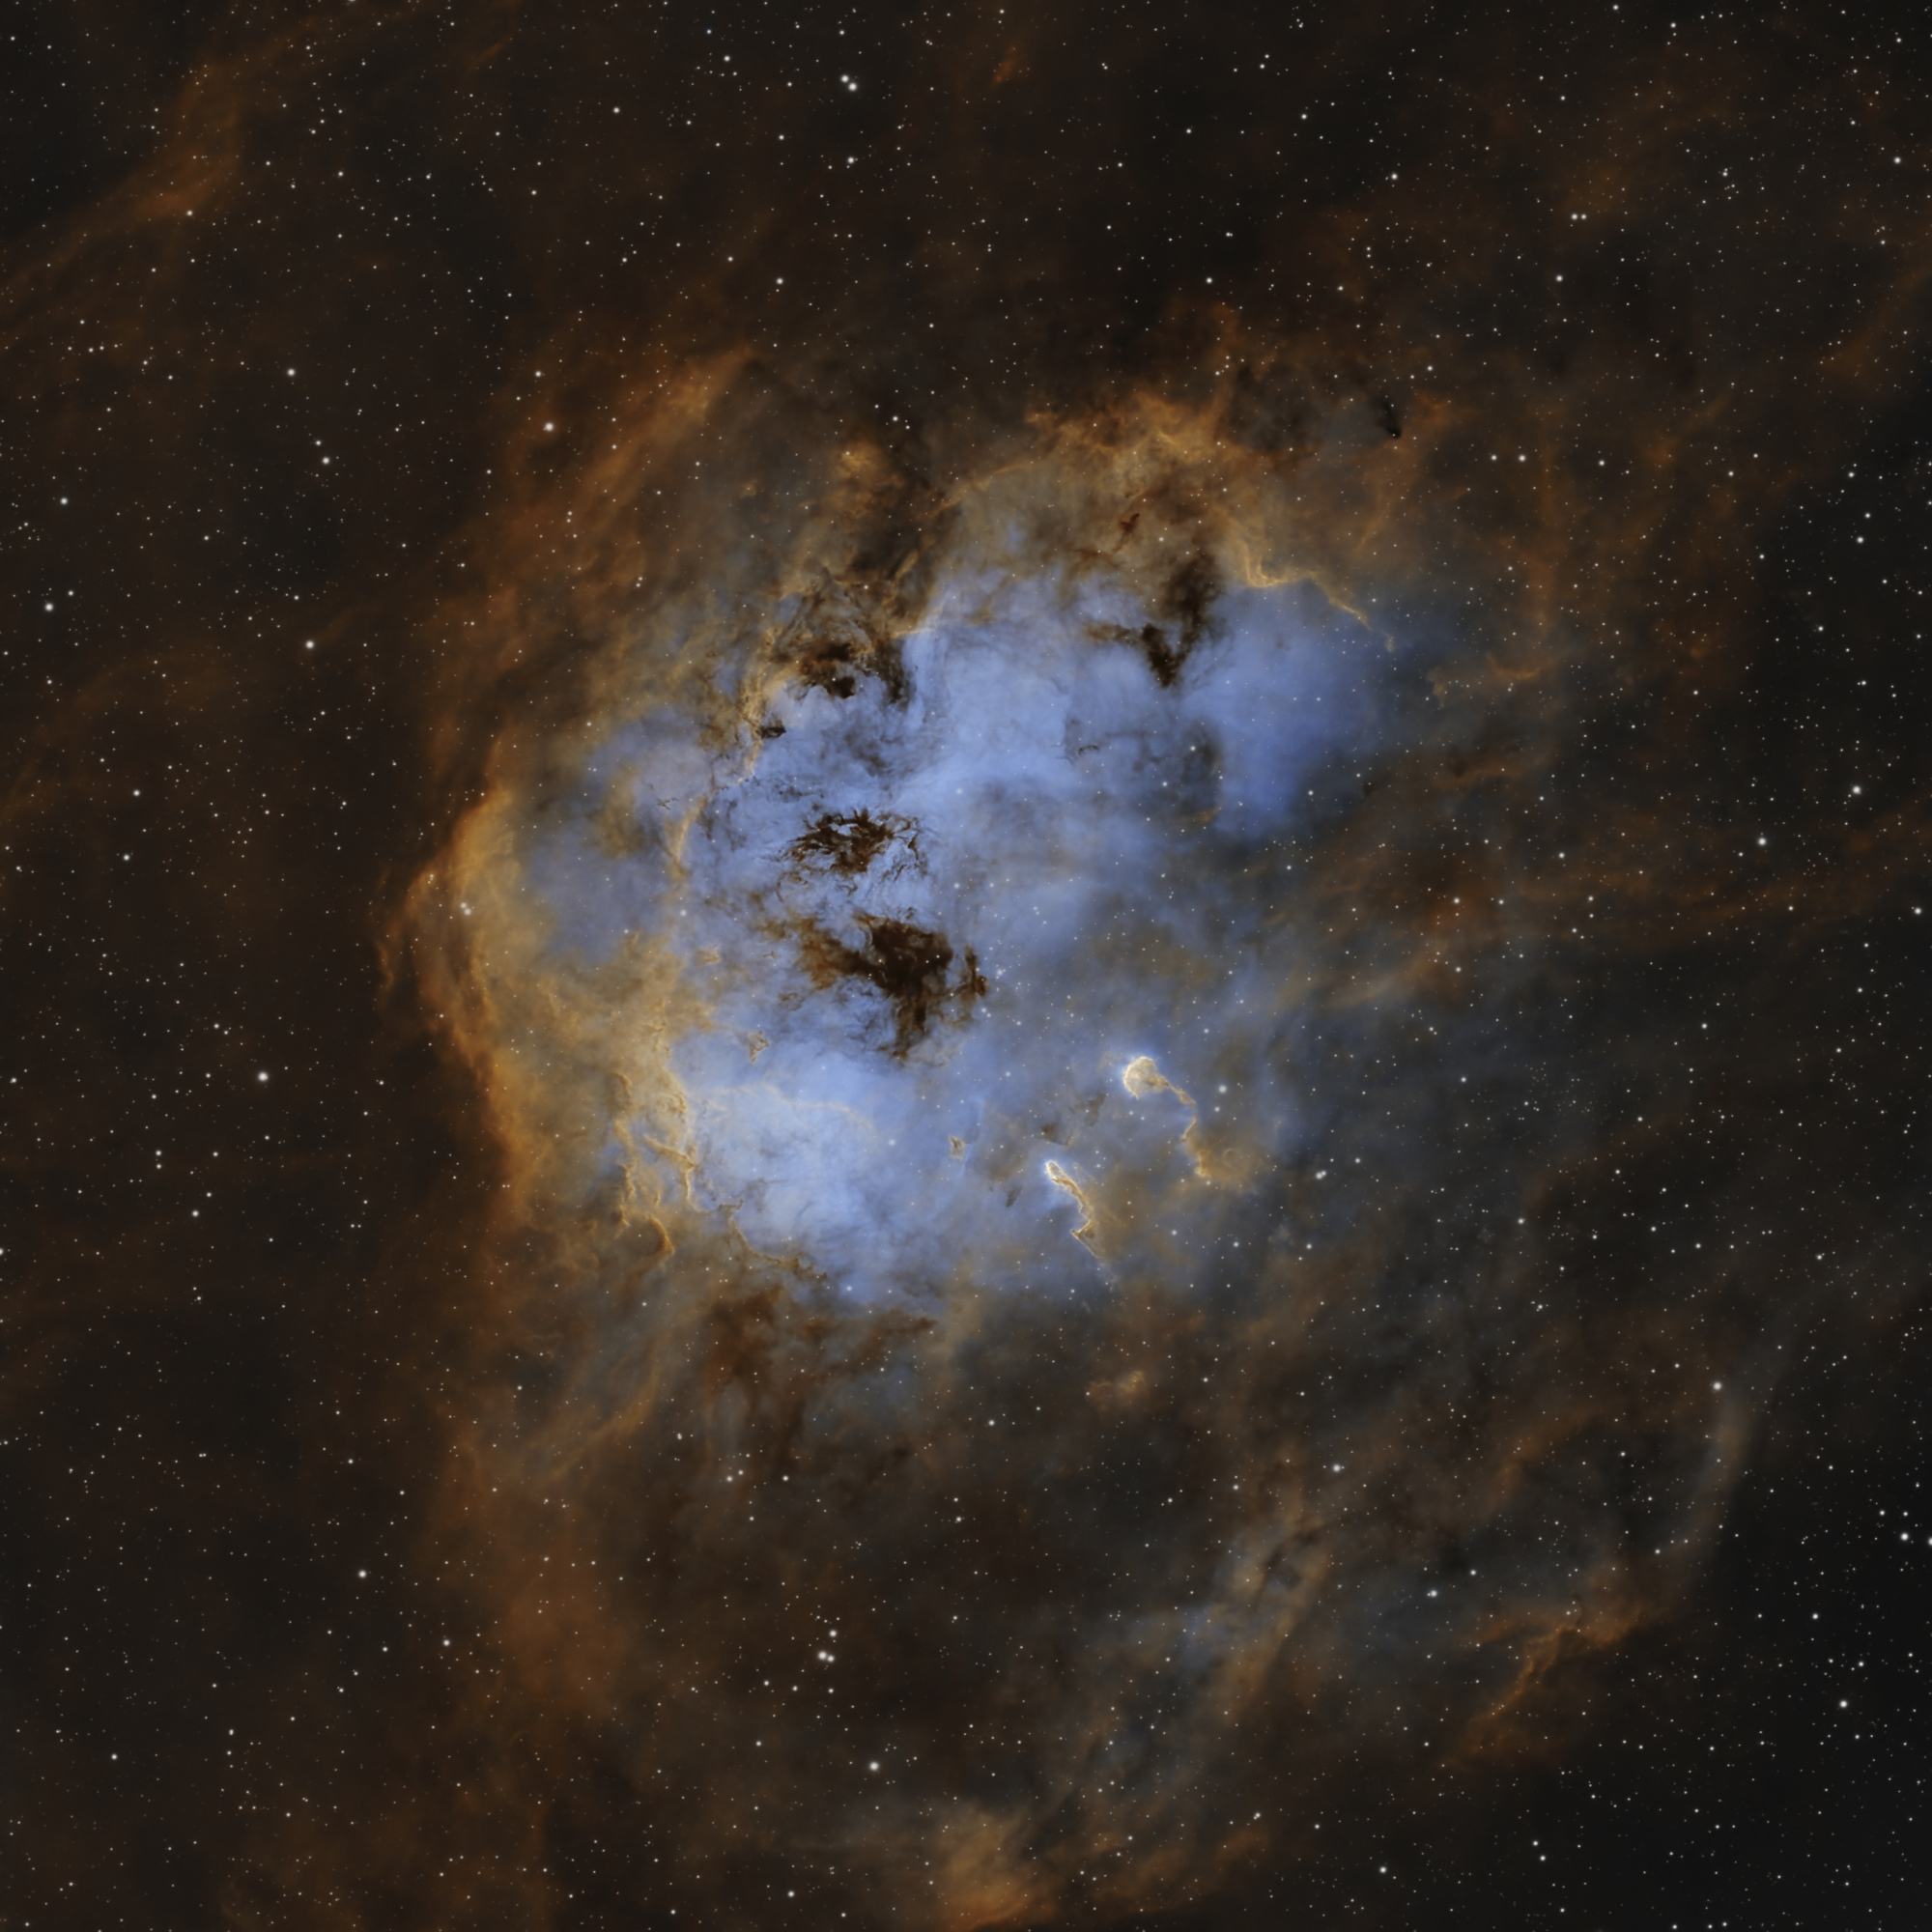 NGC_1893_v3.thumb.jpg.59608d363ede24e0e0f9d3937624ee68.jpg